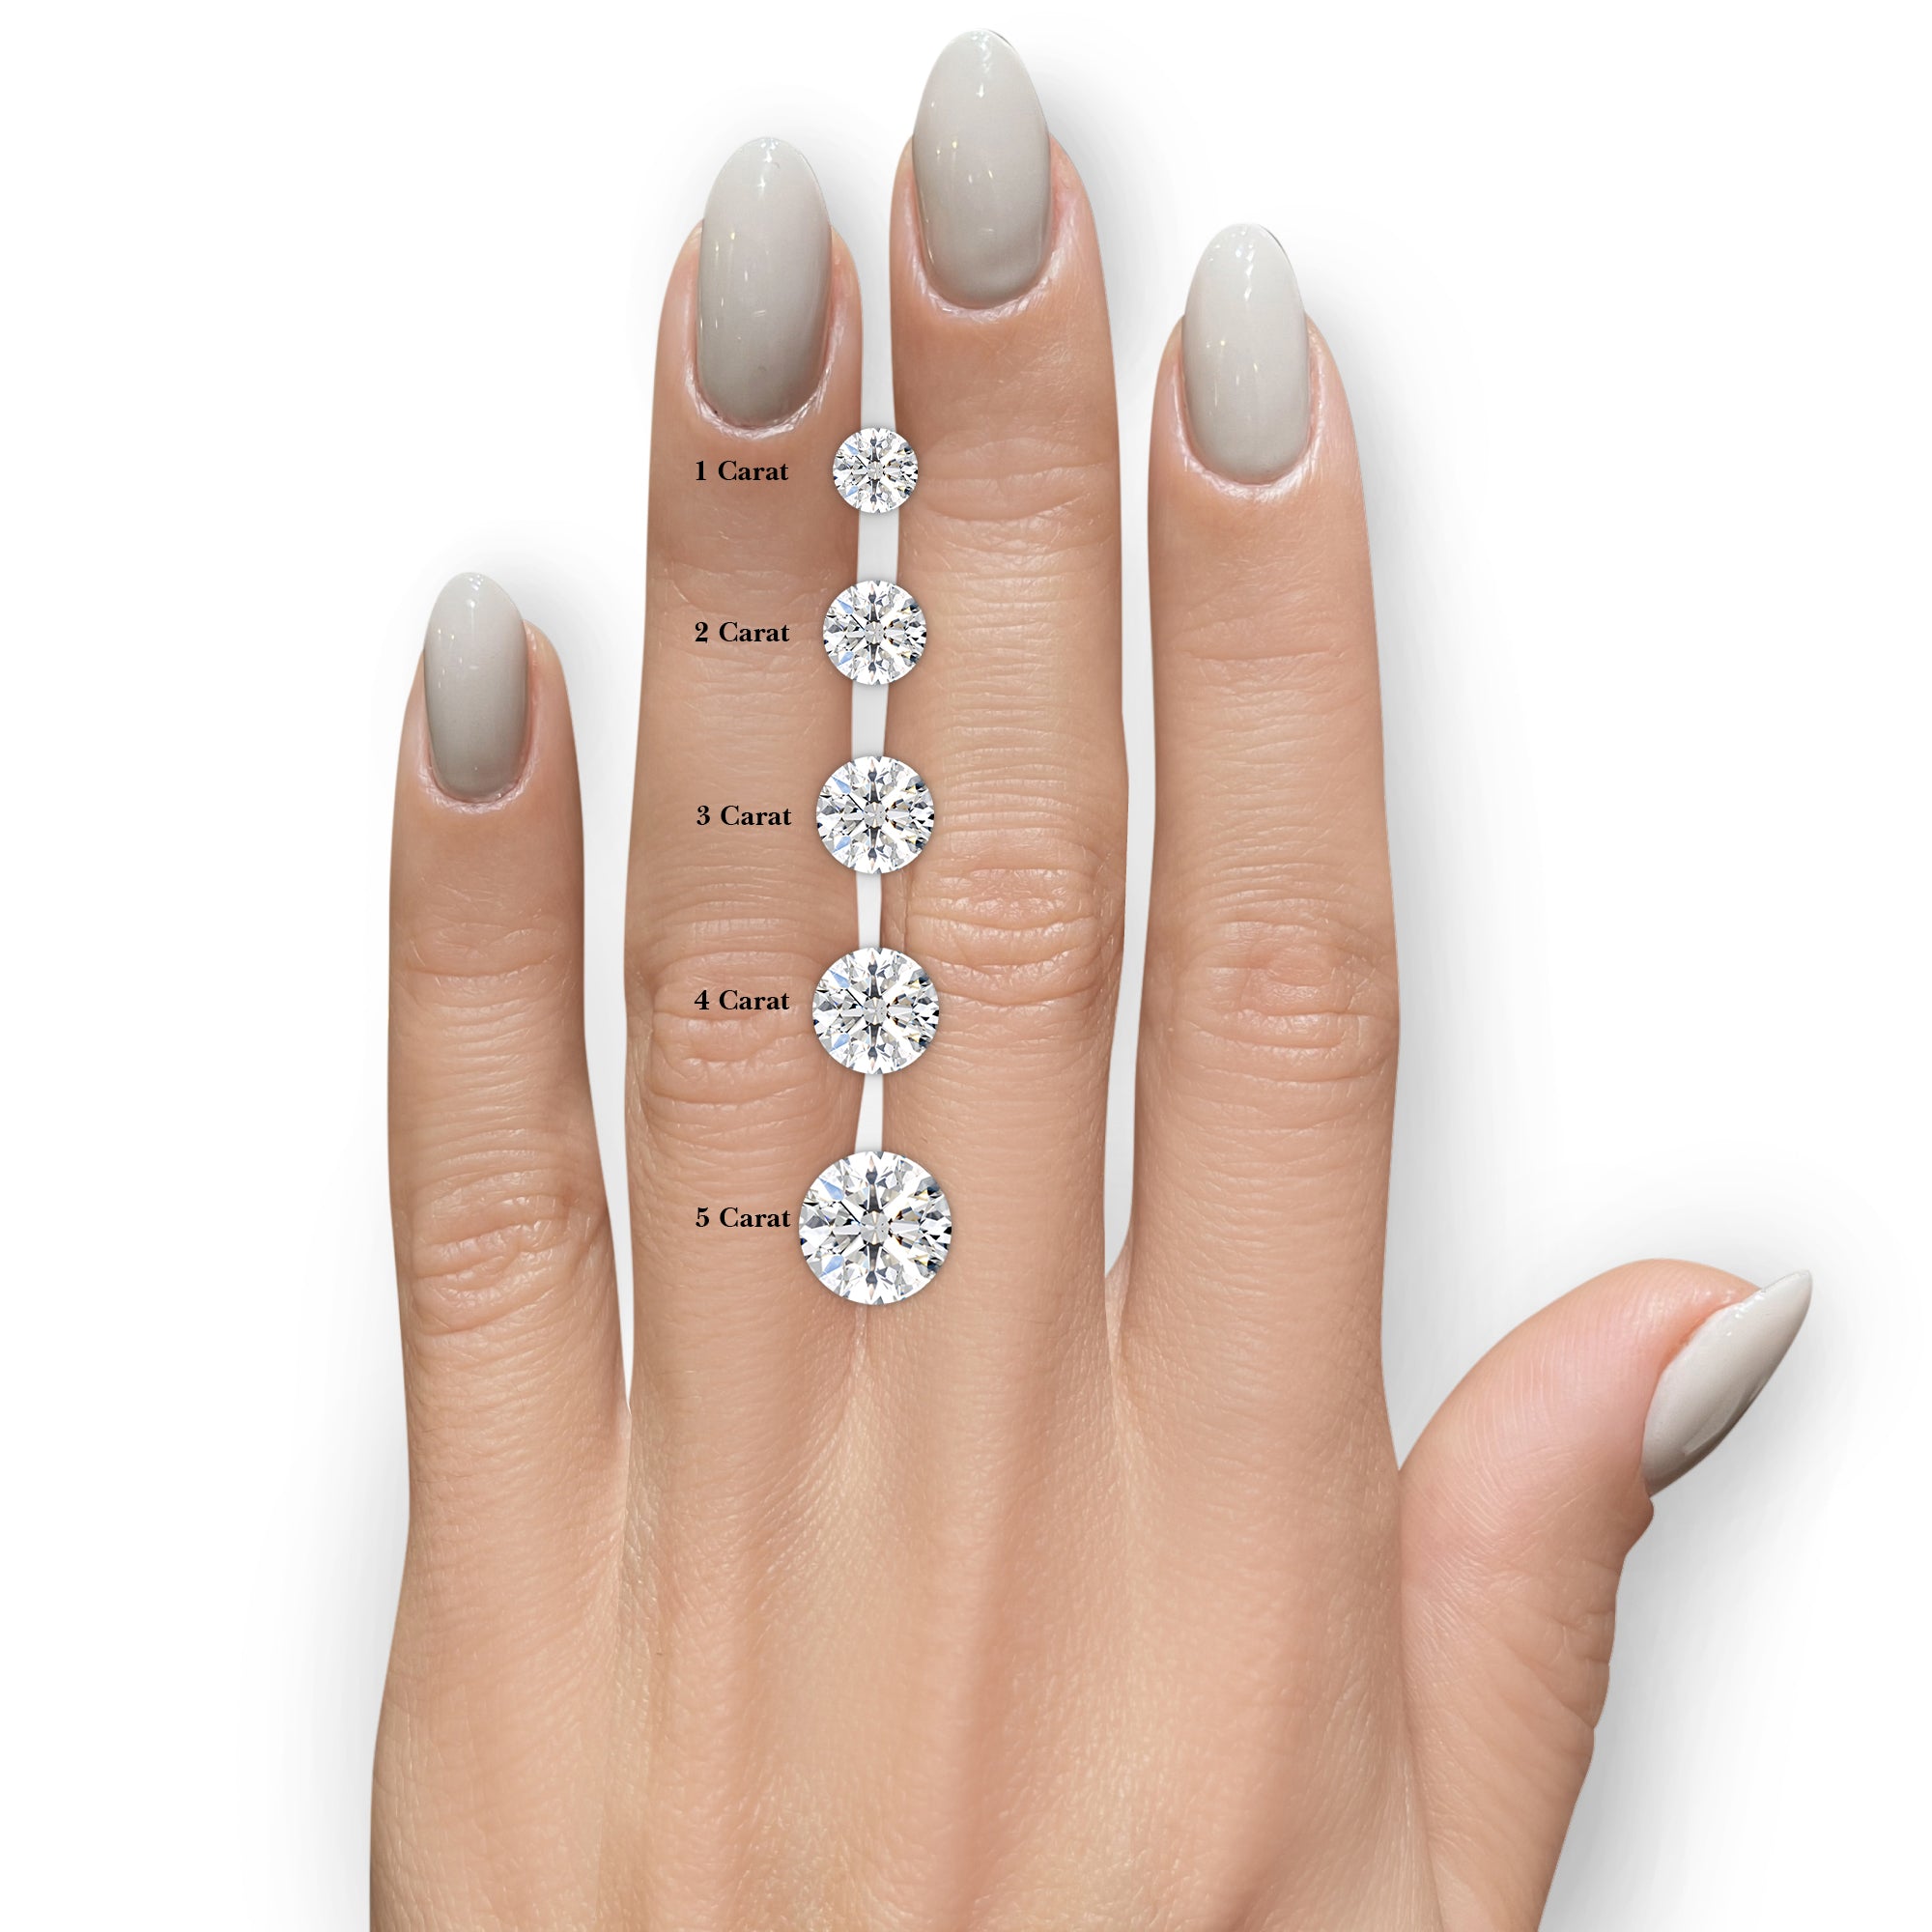 Claudia Lab Grown Diamond Ring -Platinum